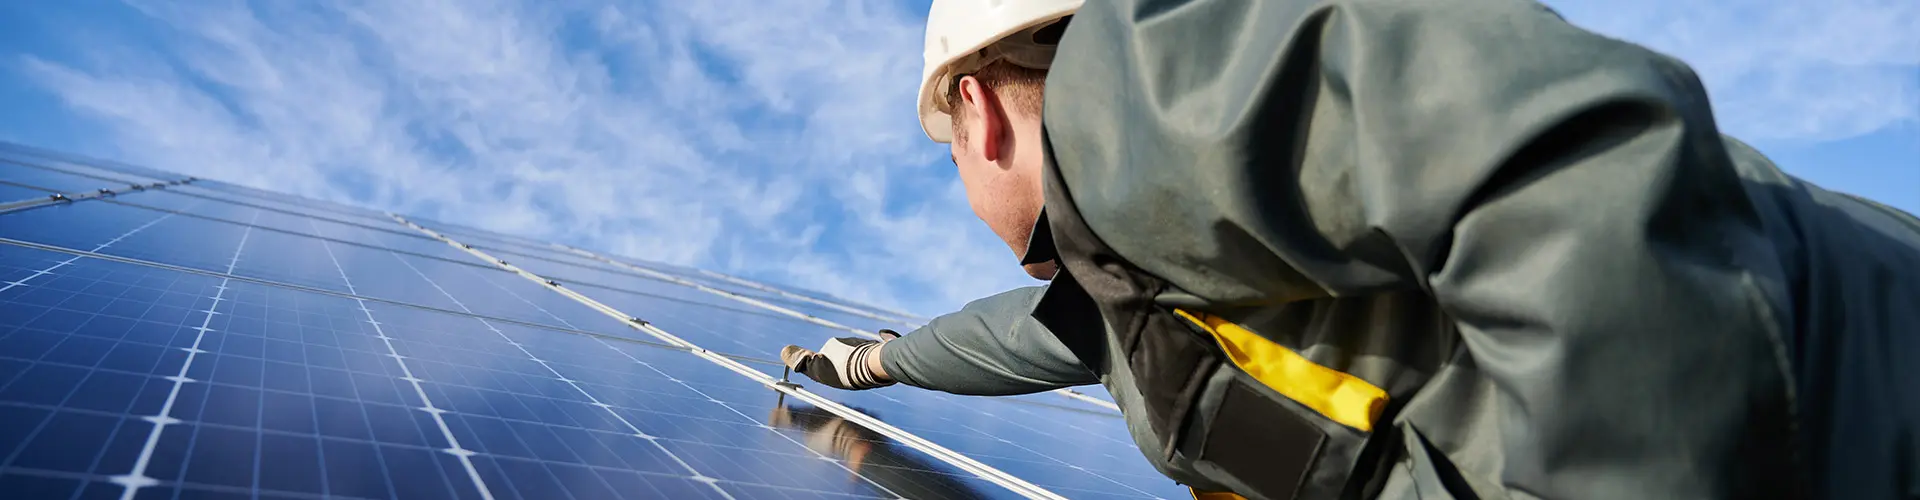 Das Bild illustriert den Prozess, bei dem ein Fachmann für Photovoltaikanlagen eine solche Anlage auf einem Dach installiert.